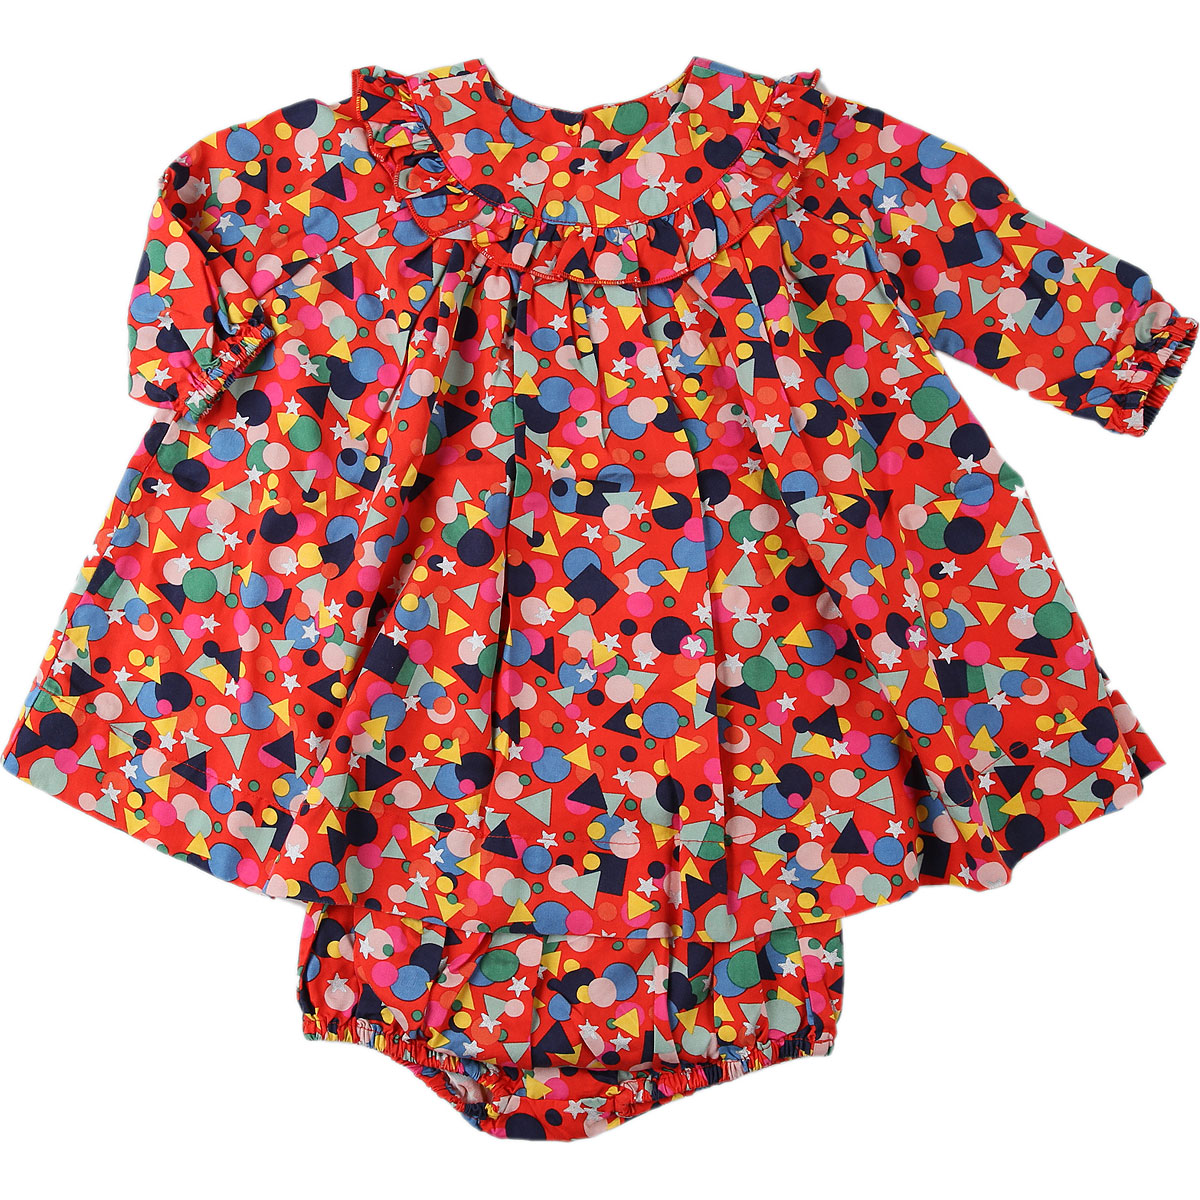 Stella McCartney Baby Kleid für Mädchen Günstig im Sale, Orangen Rot, Iyocell, 2017, 12M 18M 2Y 6M 9M